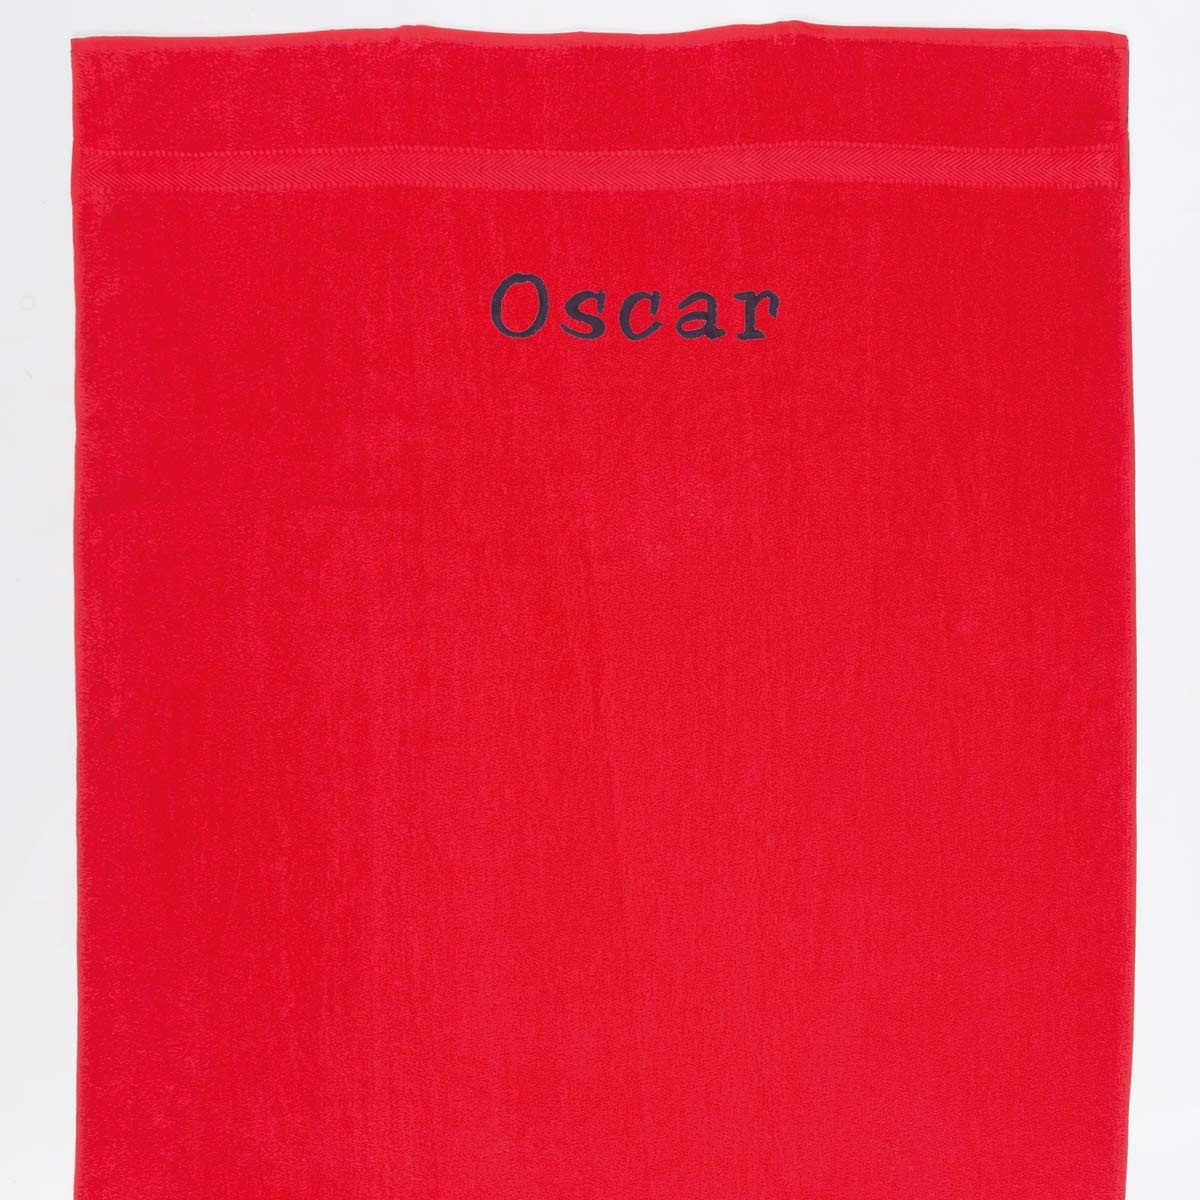 Rødt Håndklæde Med Navn - 50 X 90 Cm